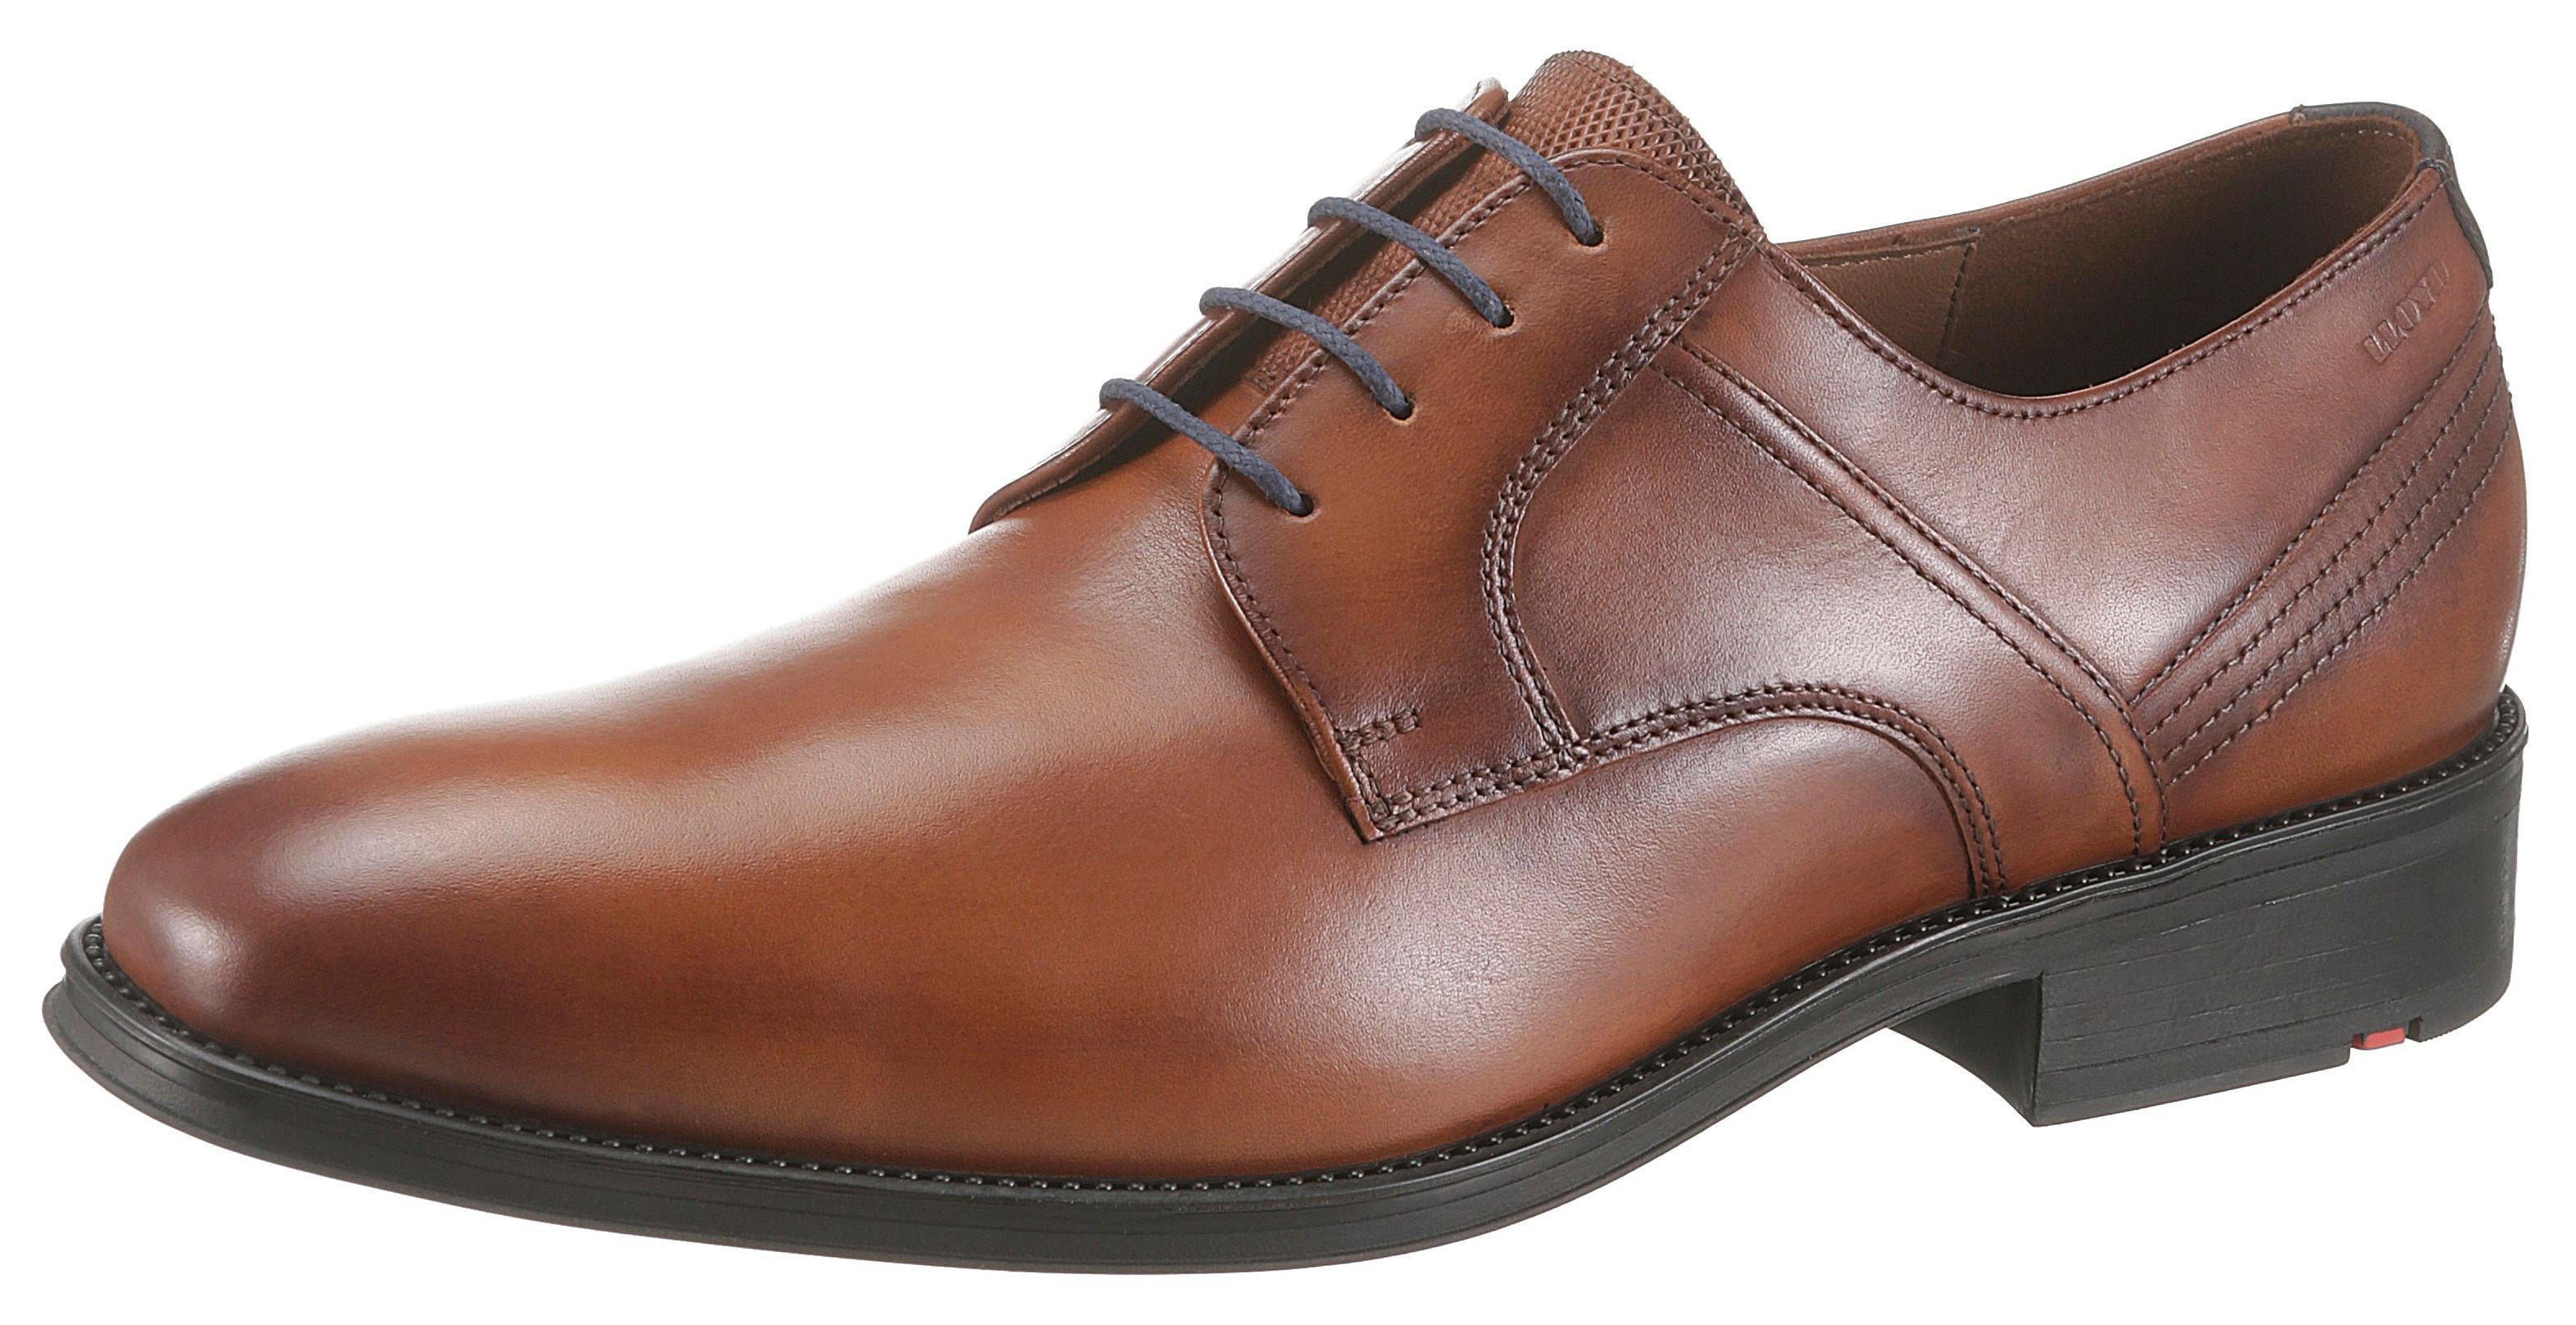 Herren Business-Schuhe in braun online kaufen | OTTO